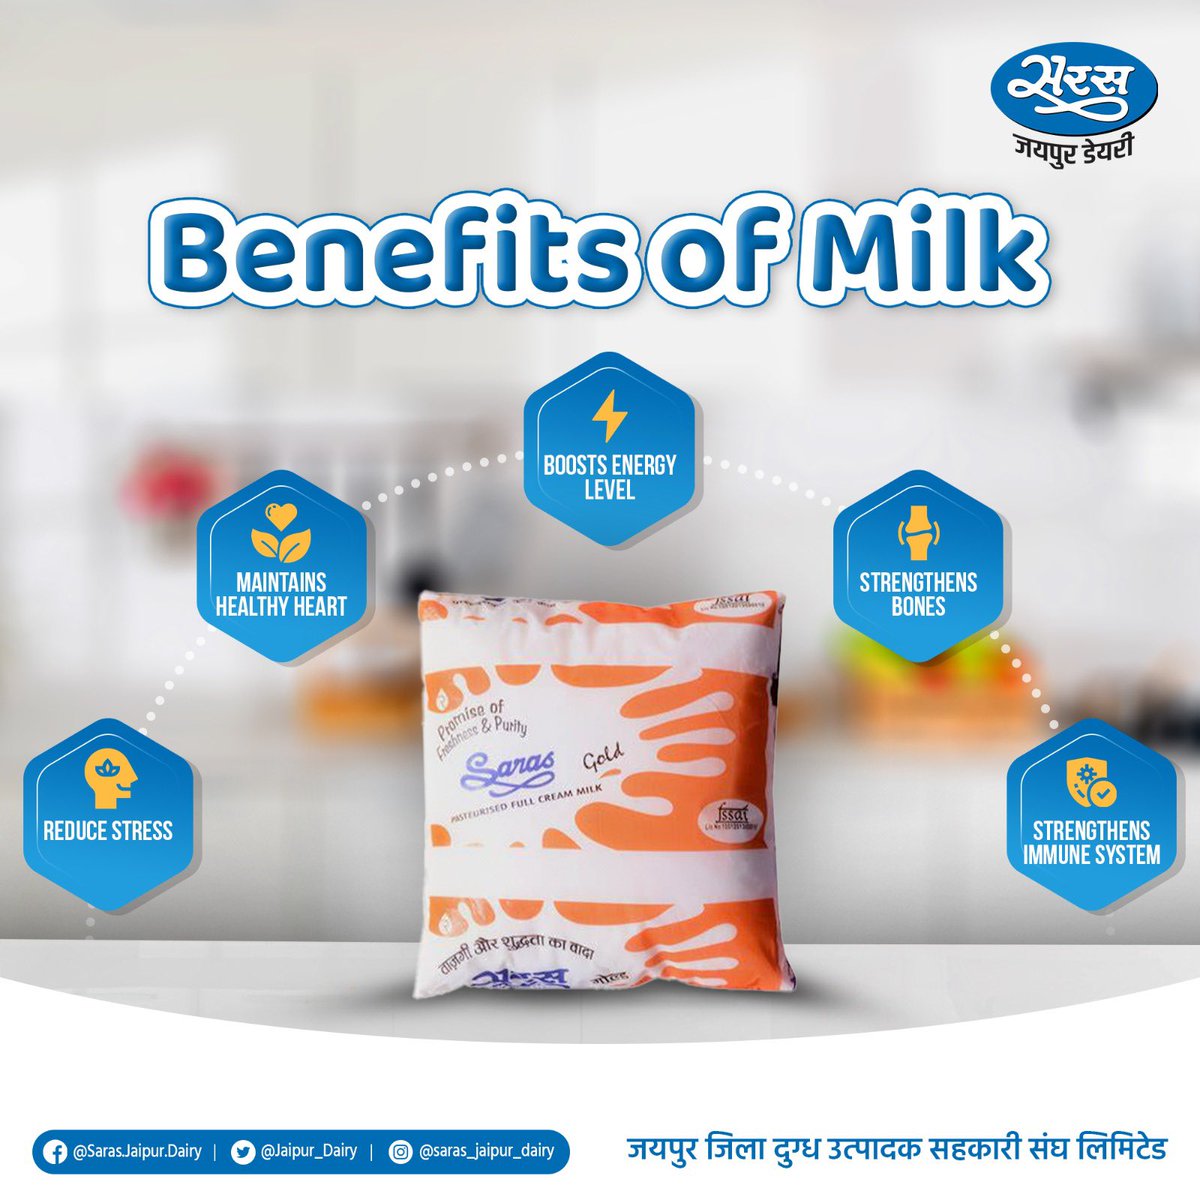 शरीर को चुस्त, दुरुस्त और तंदरुस्त रखने के लिए दूध का सेवन करना बेहद लाभप्रद है। सरस दूध का रोज़ाना सेवन कर शरीर को स्वस्थ रखें।

#sarasmilk #sarasjaipurdairy #milk #benefitsofmilk #healthymilk #reducestress #boost #energylevel